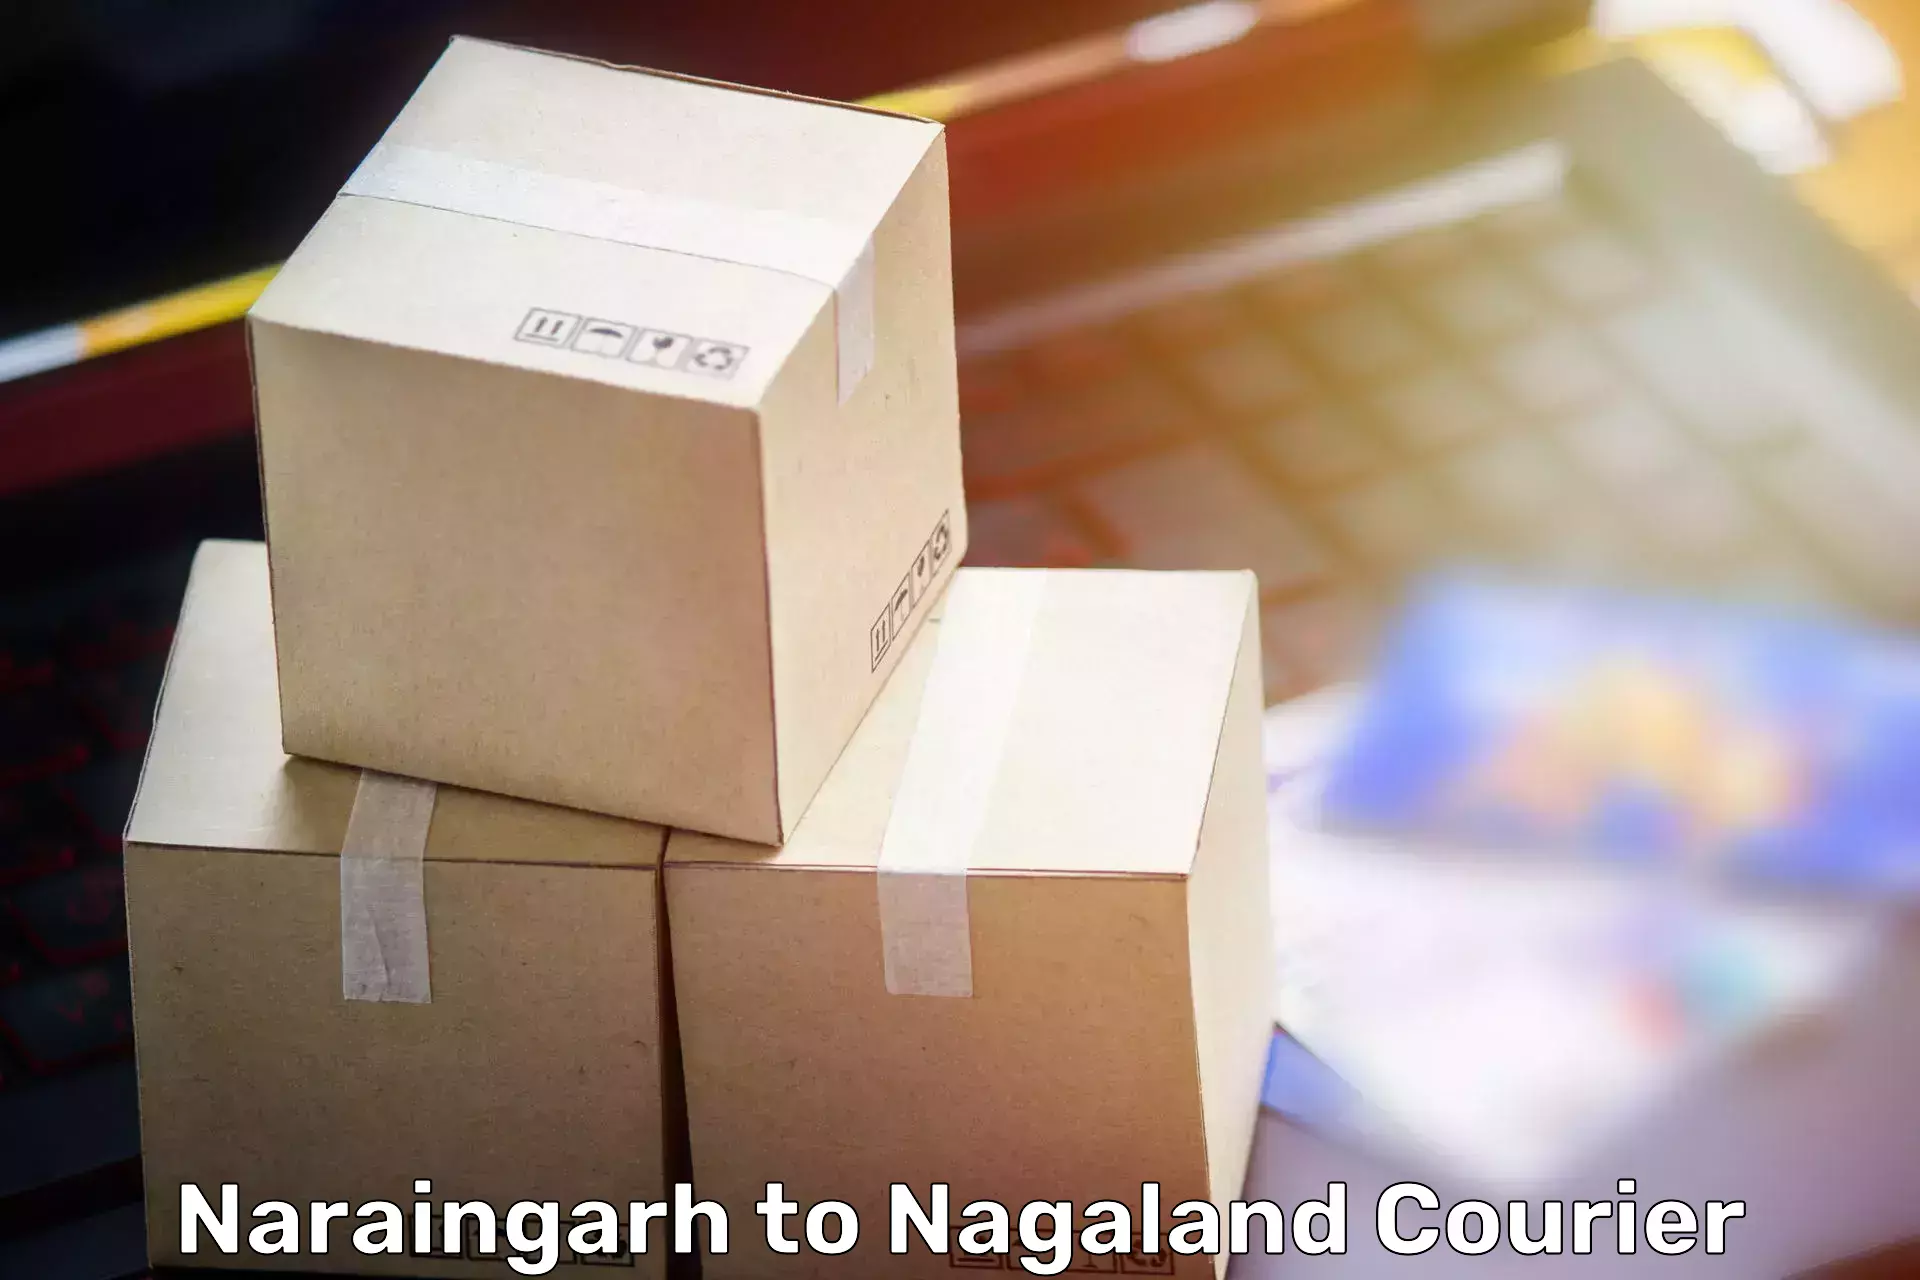 Furniture moving experts Naraingarh to Mon